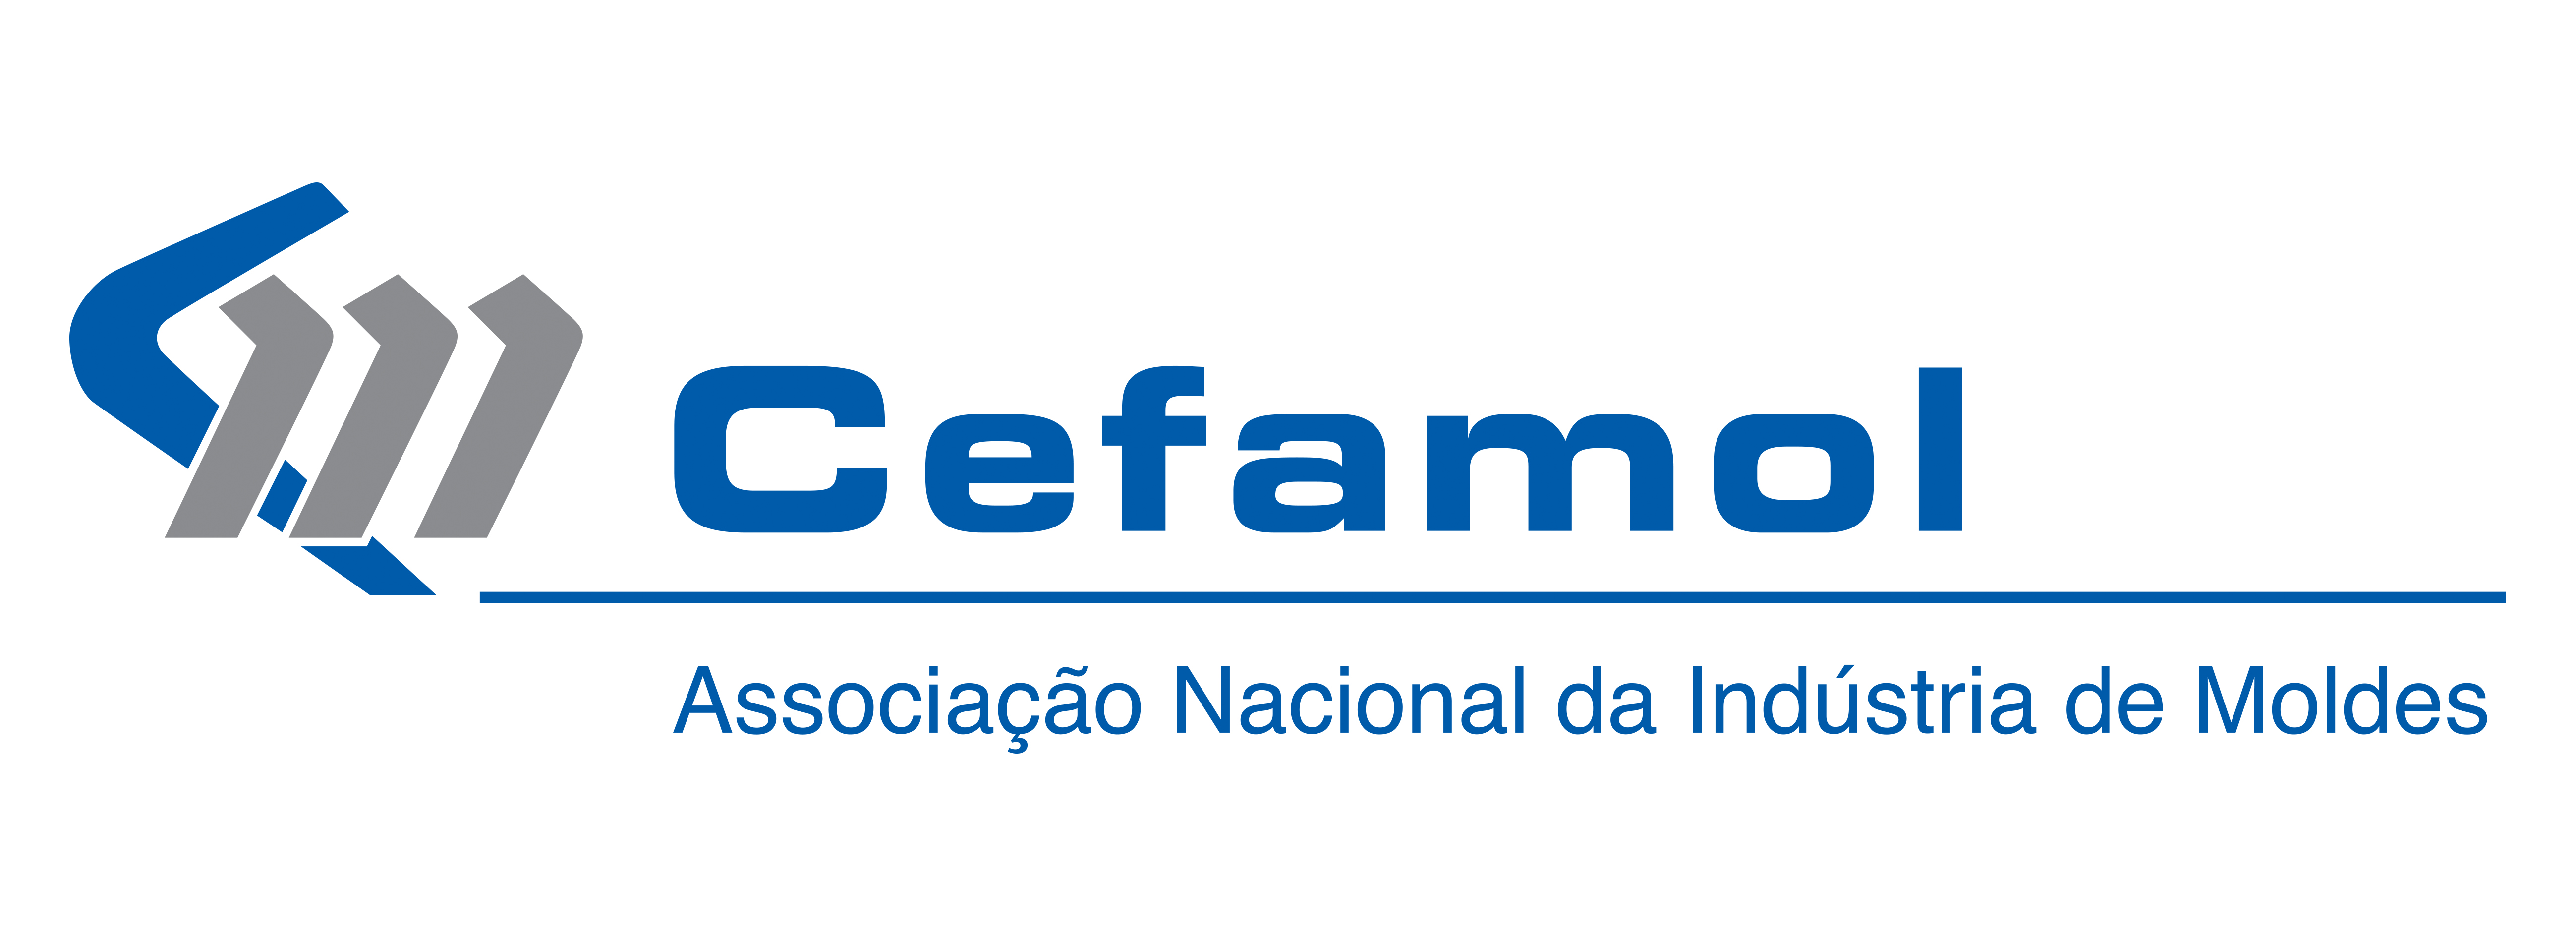 CEFAMOL - Associação Nacional da Indústria de Moldes